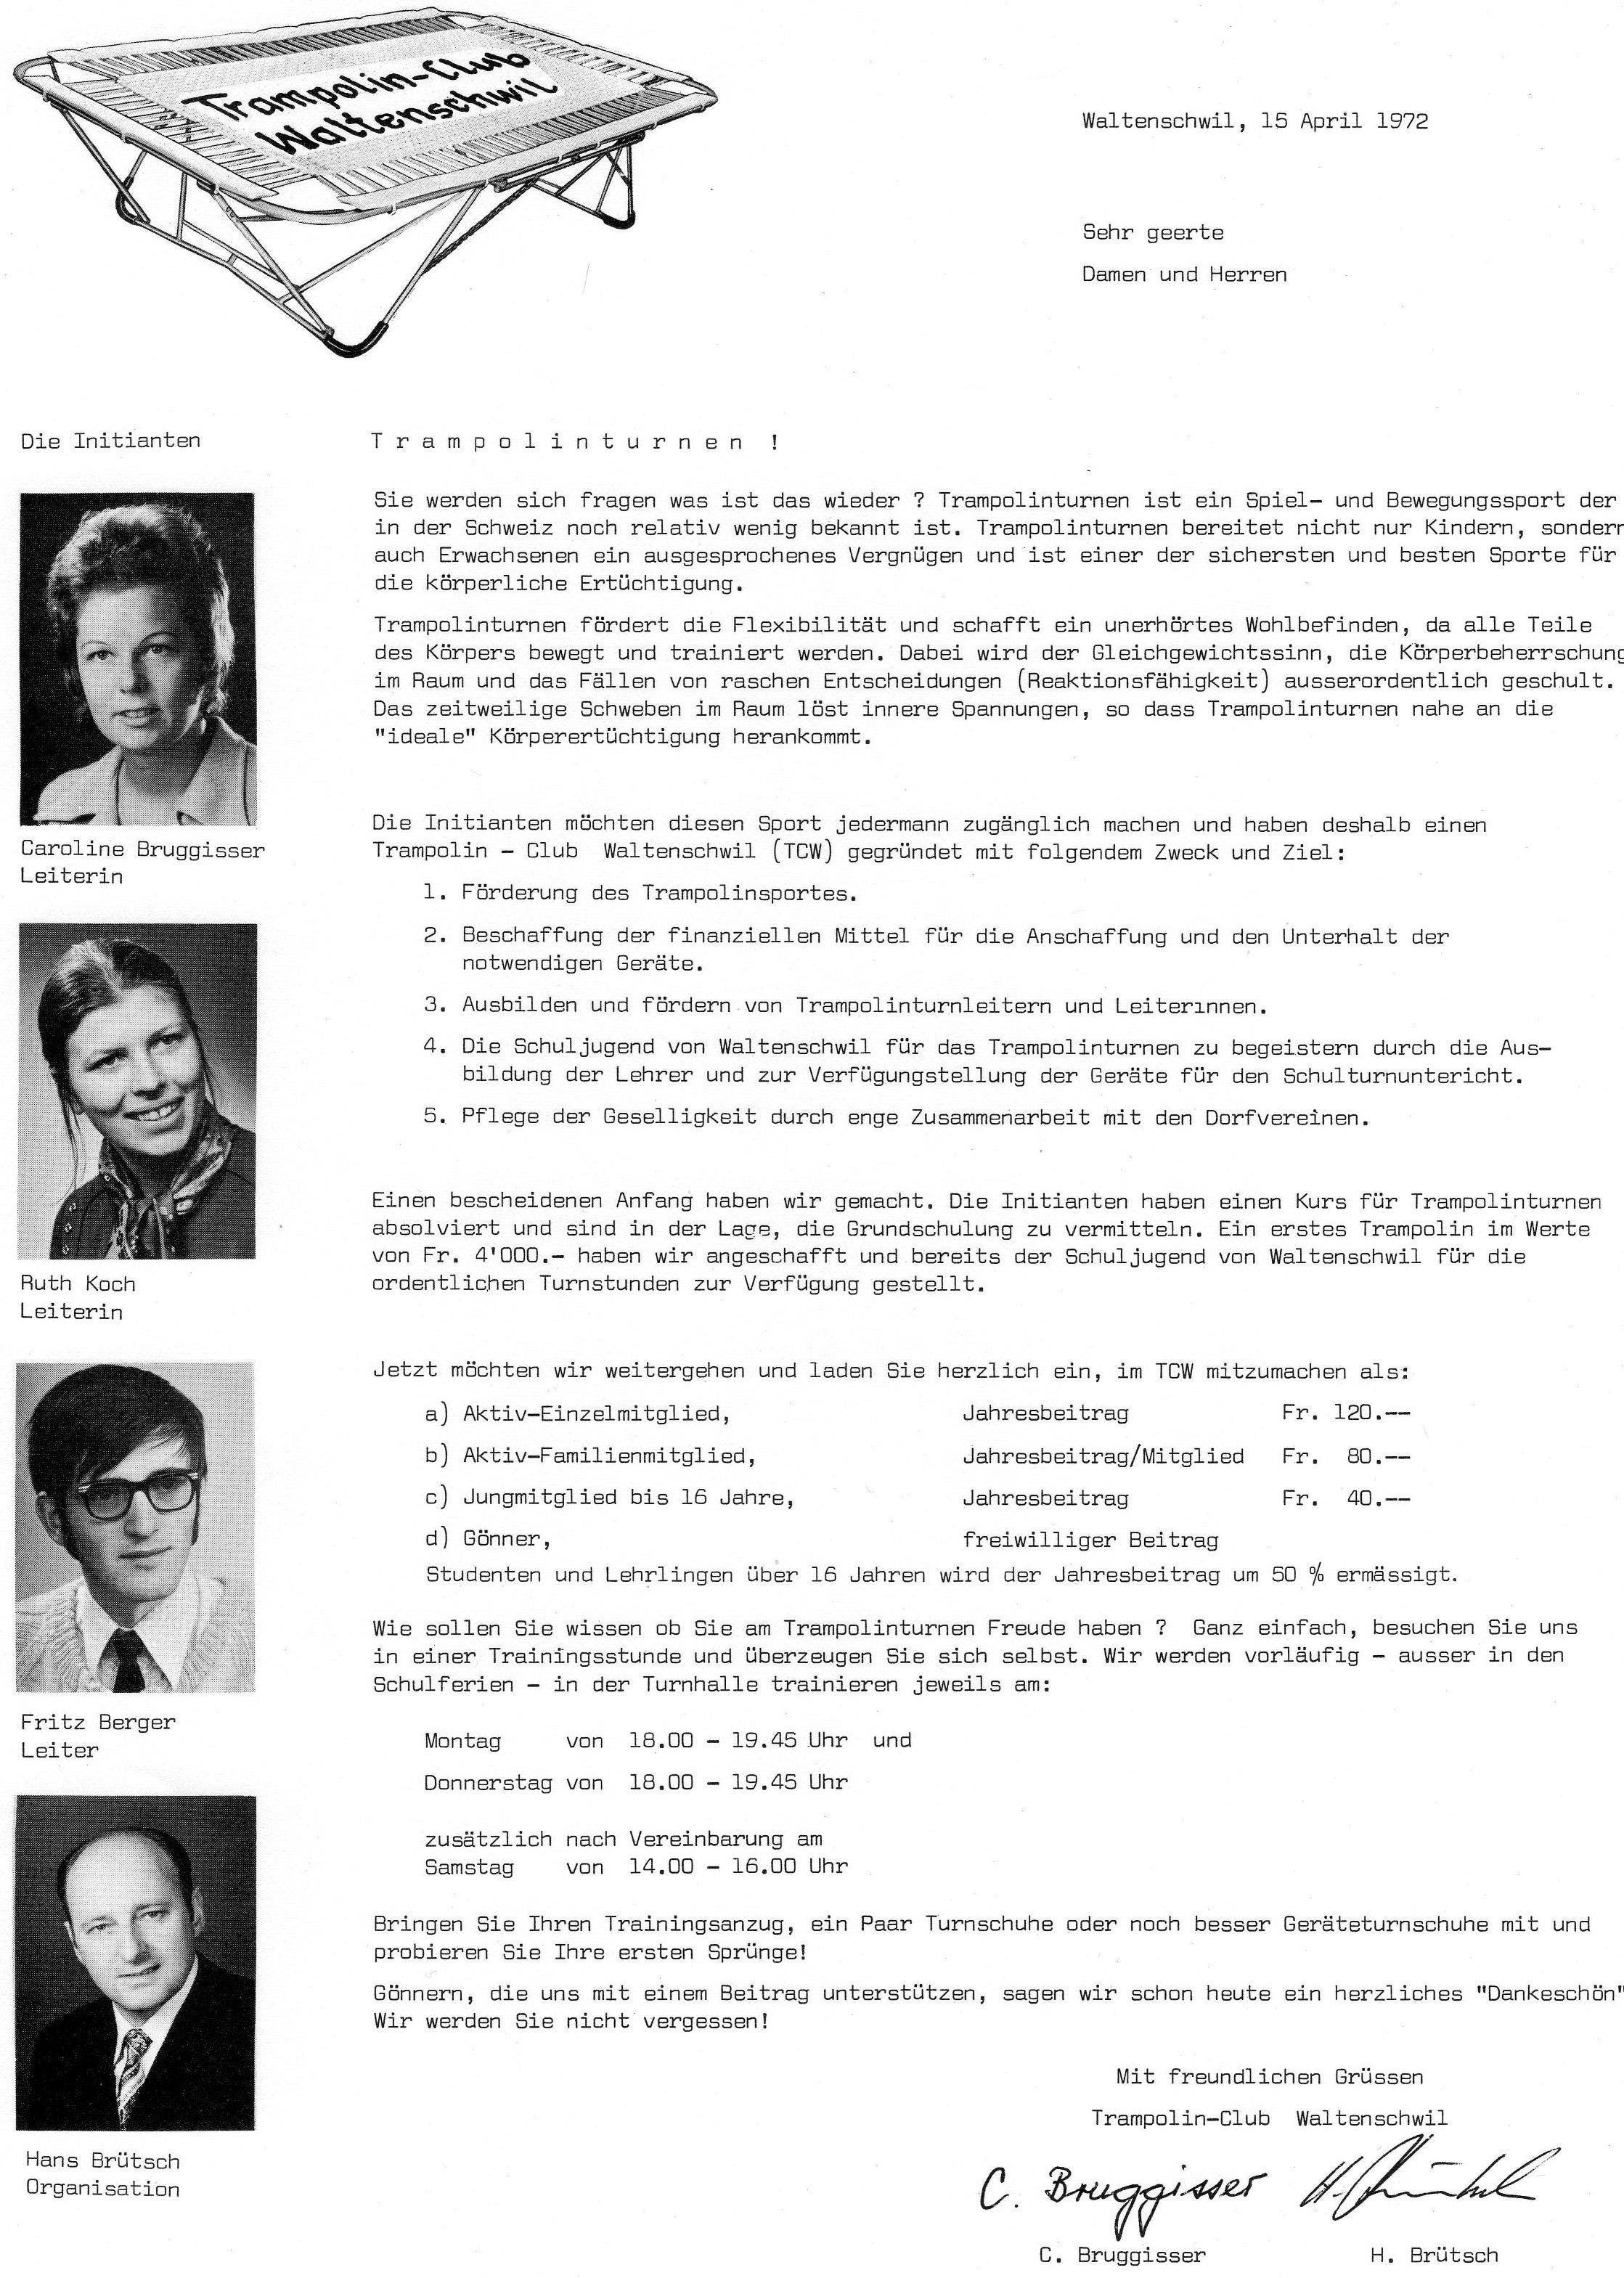 Mit diesem Flugblatt fing 1972 alles an: Caroline Bruggisser, Ruth Koch, Fritz Berger und Hans Brütsch suchten Mitglieder für ihren neuen Verein.